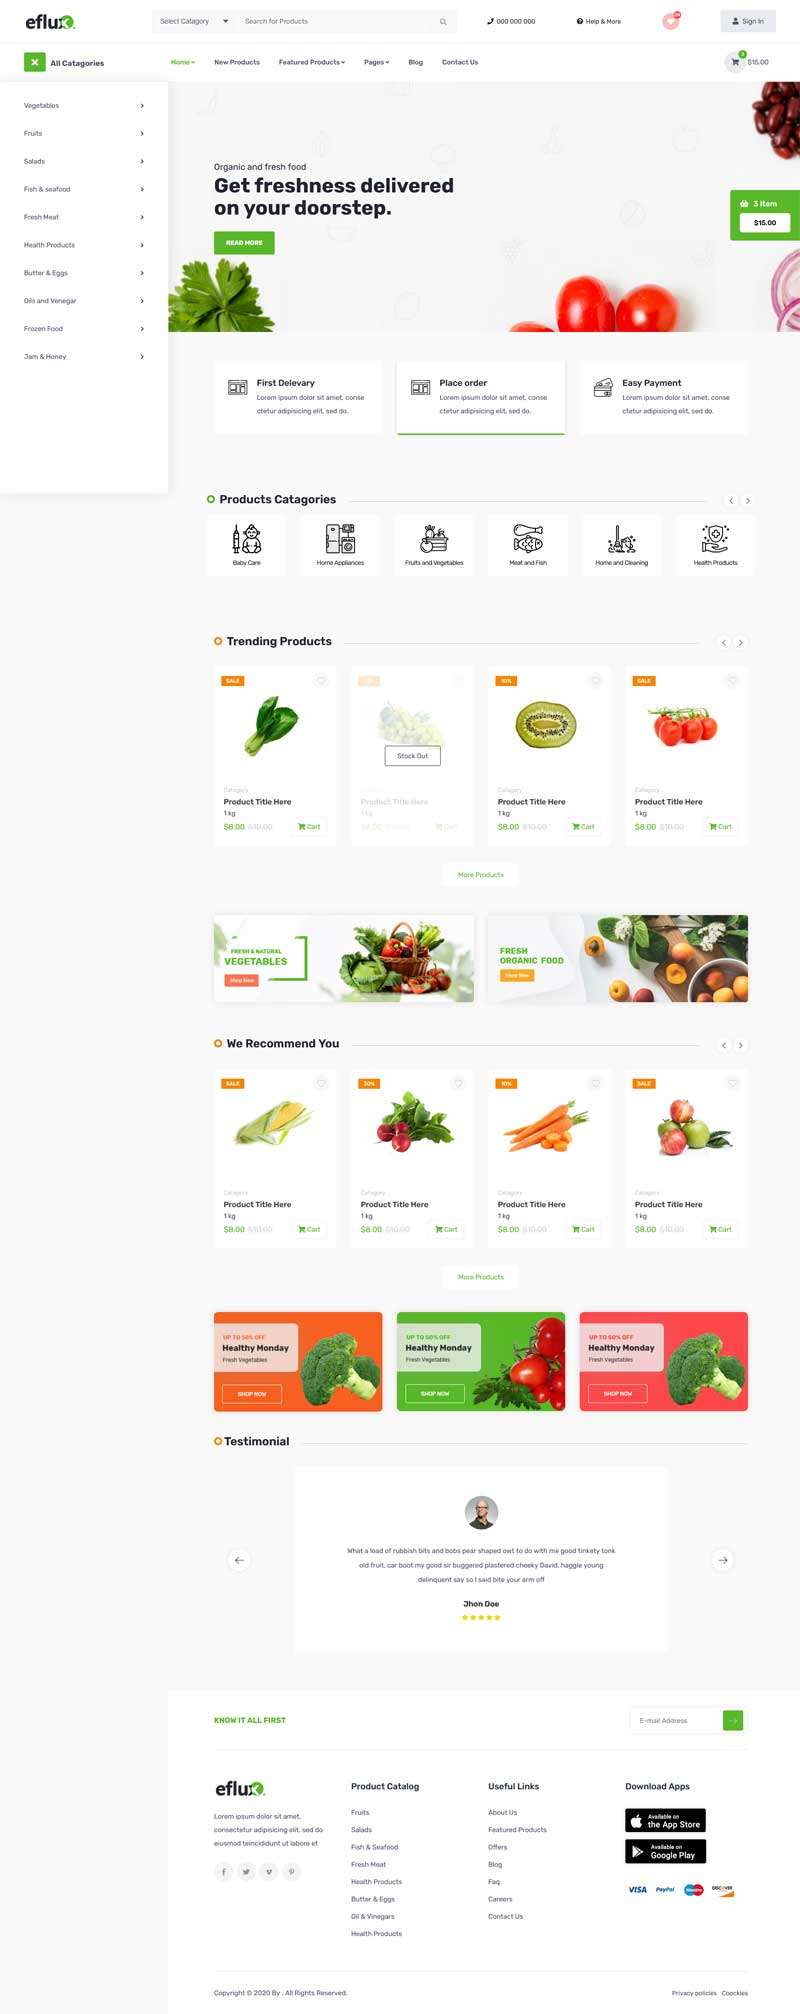 綠色農產品蔬菜水果電商網站模板7139